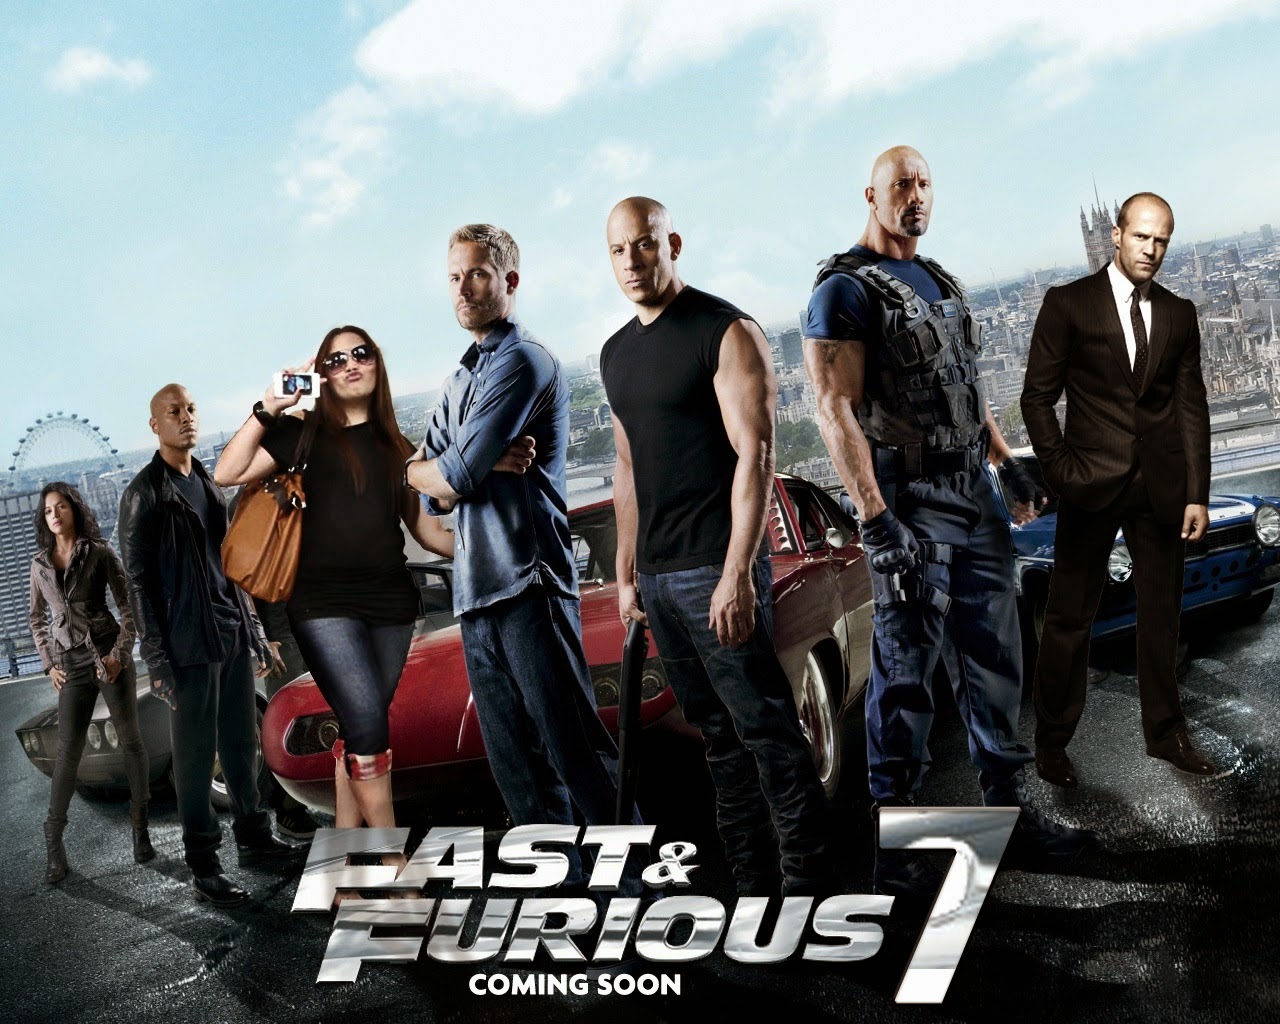 Koleksi Poster Film Fast Furious 7 2015 Gambar Gambar